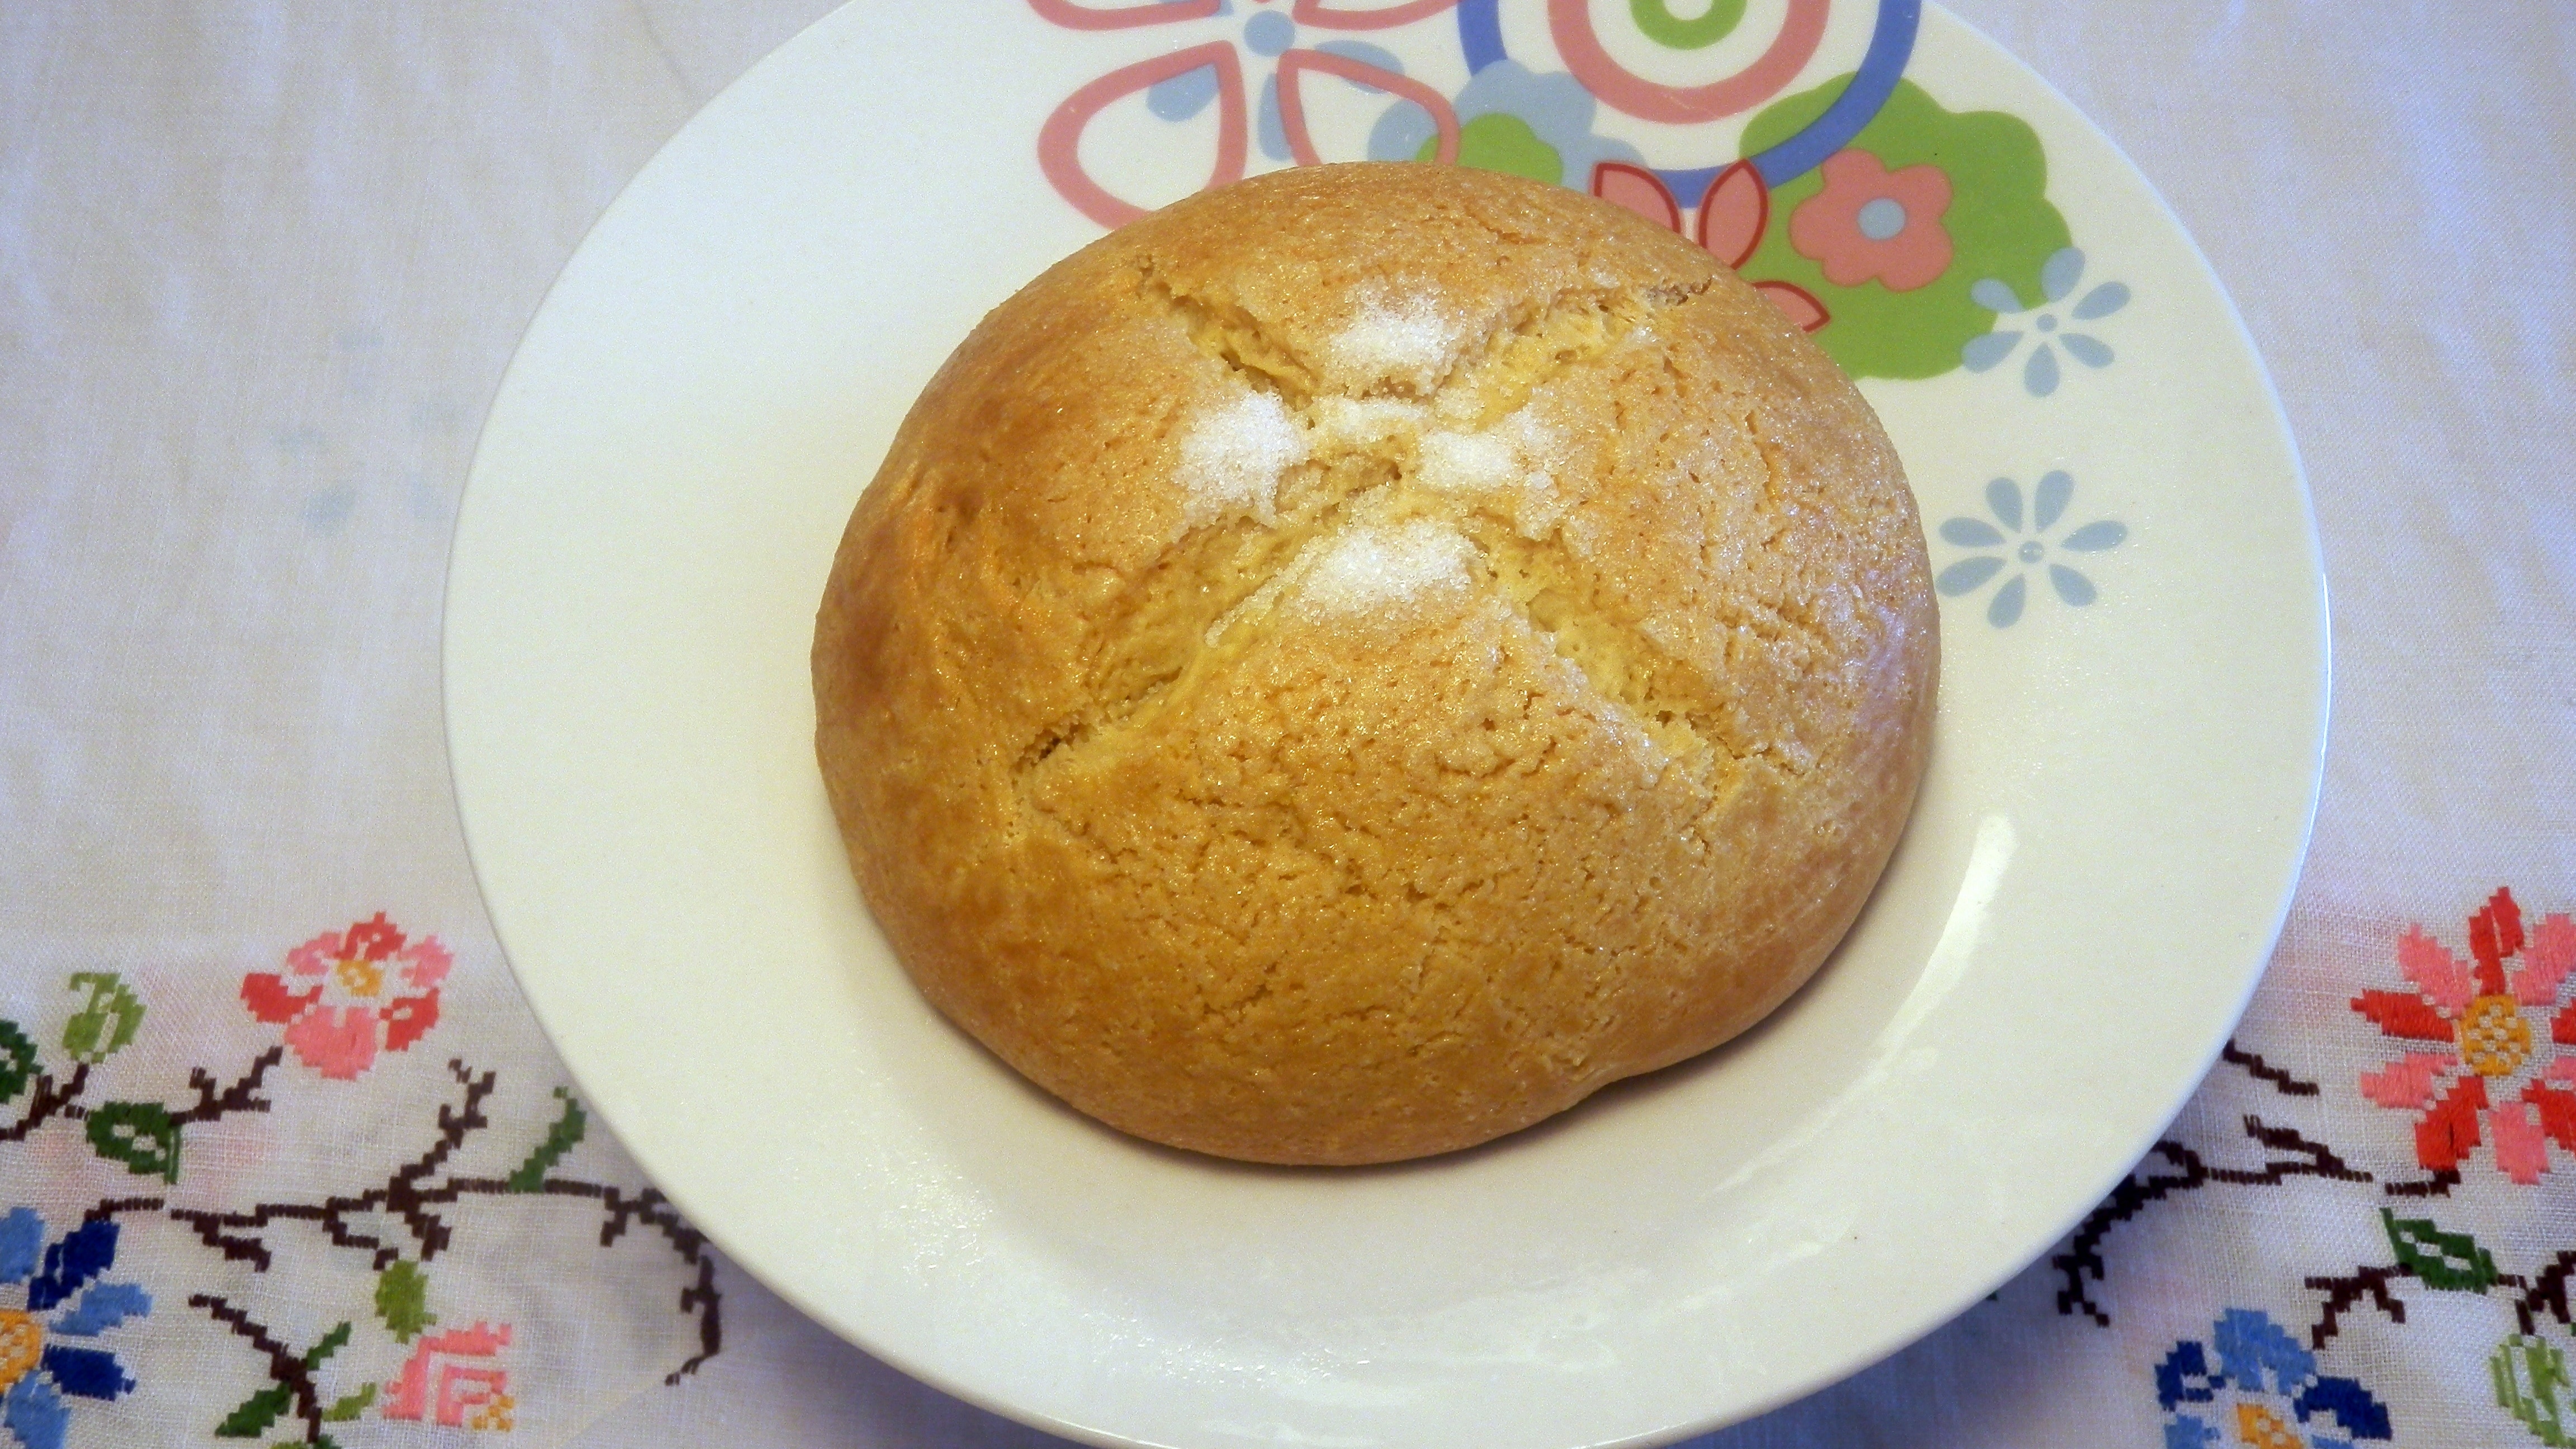 round bread